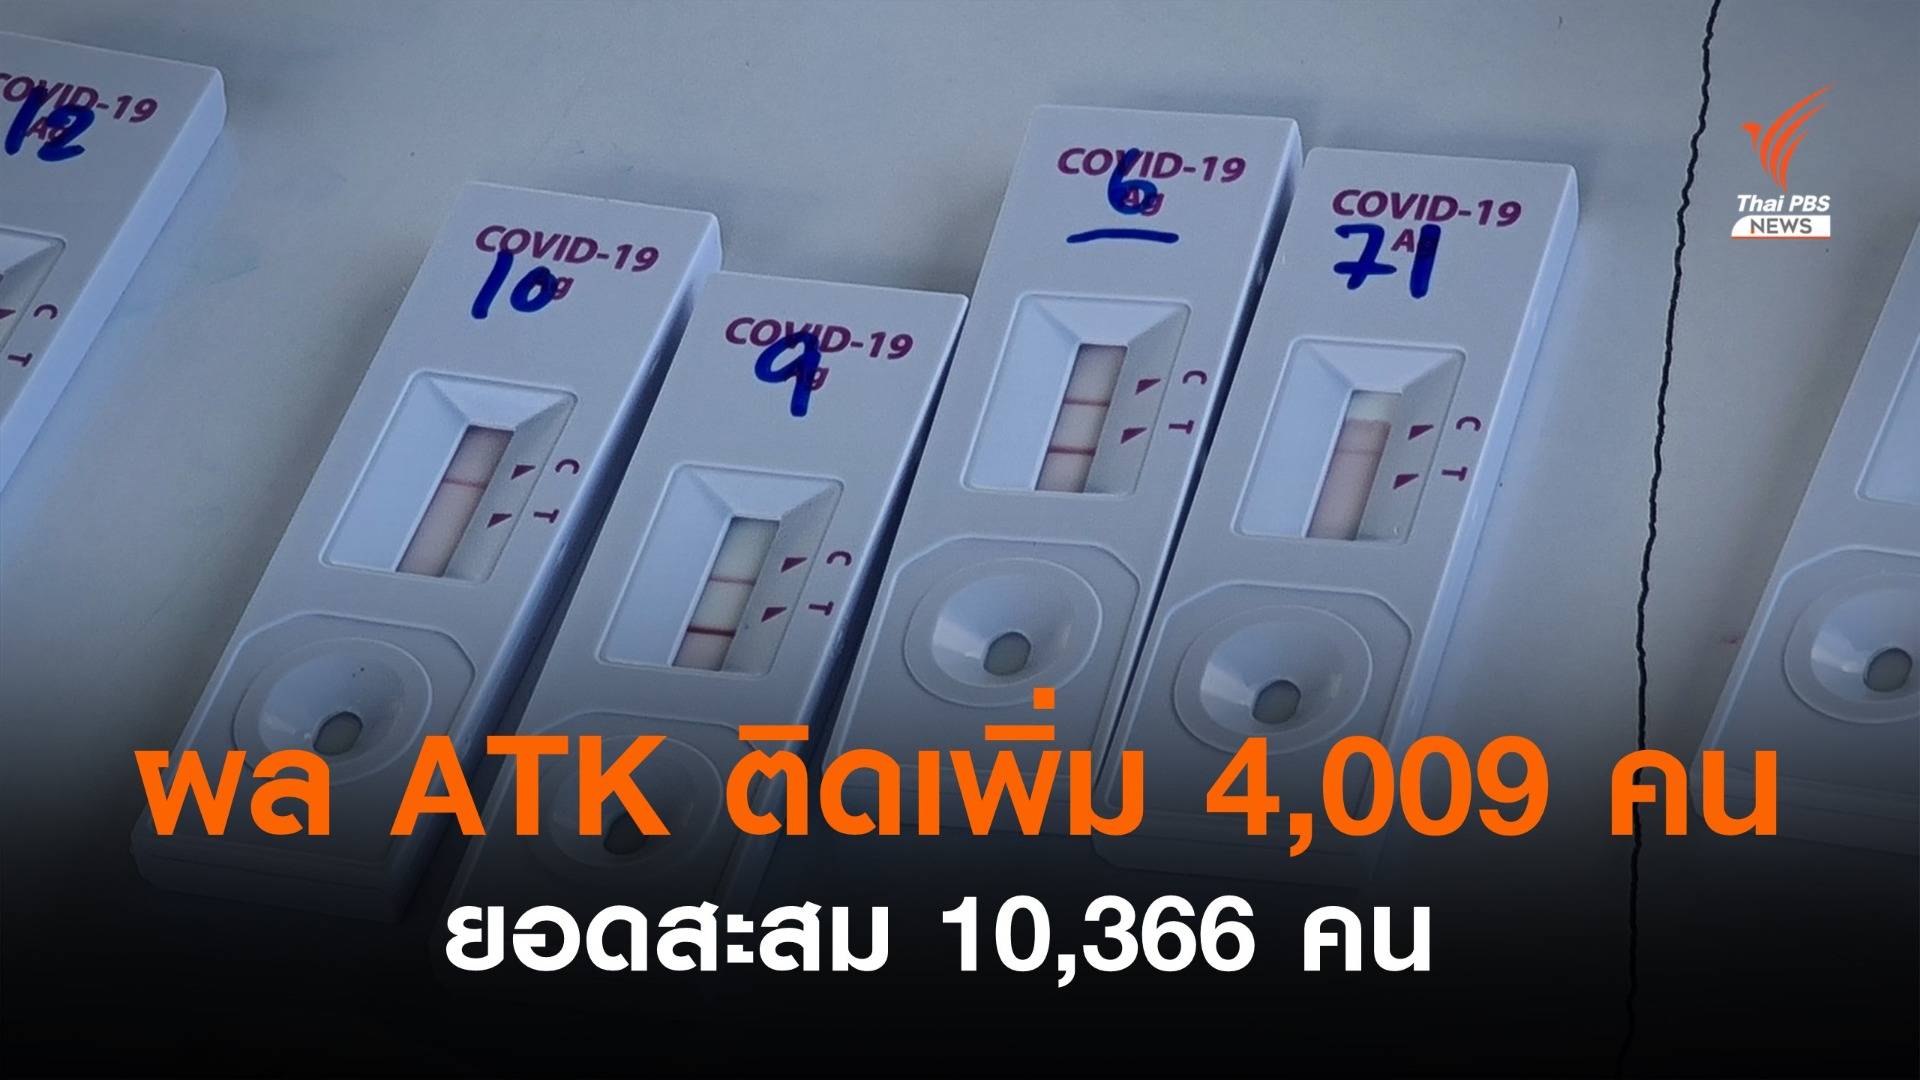 ปลดล็อกตรวจ ATK เป็นบวก เข้าระบบ HI ได้ ยอดสะสม 10,366 คน 